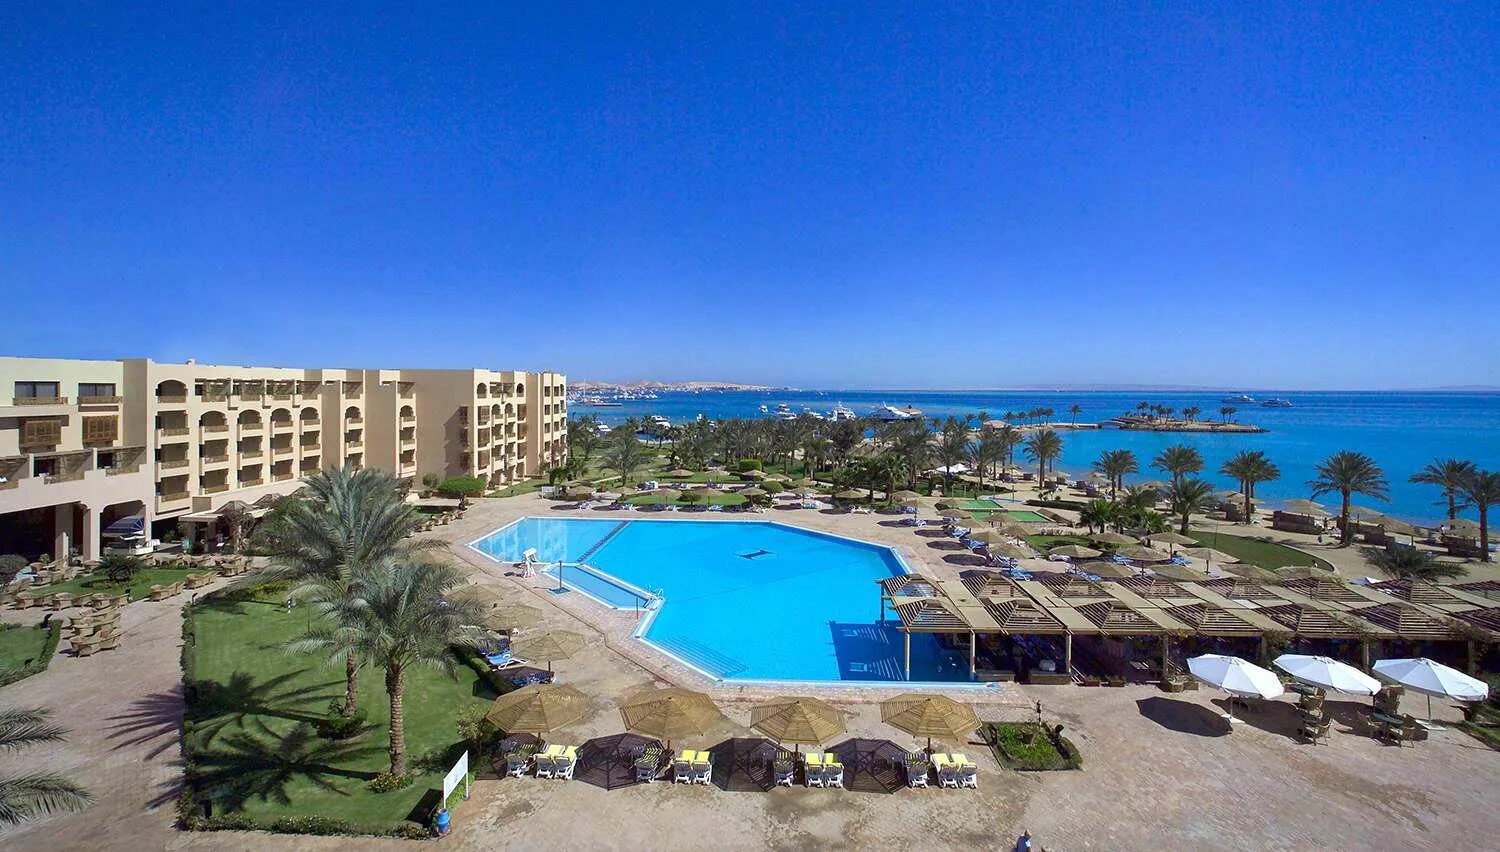 Континенталь Хургада Резорт. Movenpick Resort Хургада. Continental Hotel Hurghada 5 Египет. Континенталь отель Хургада 5.